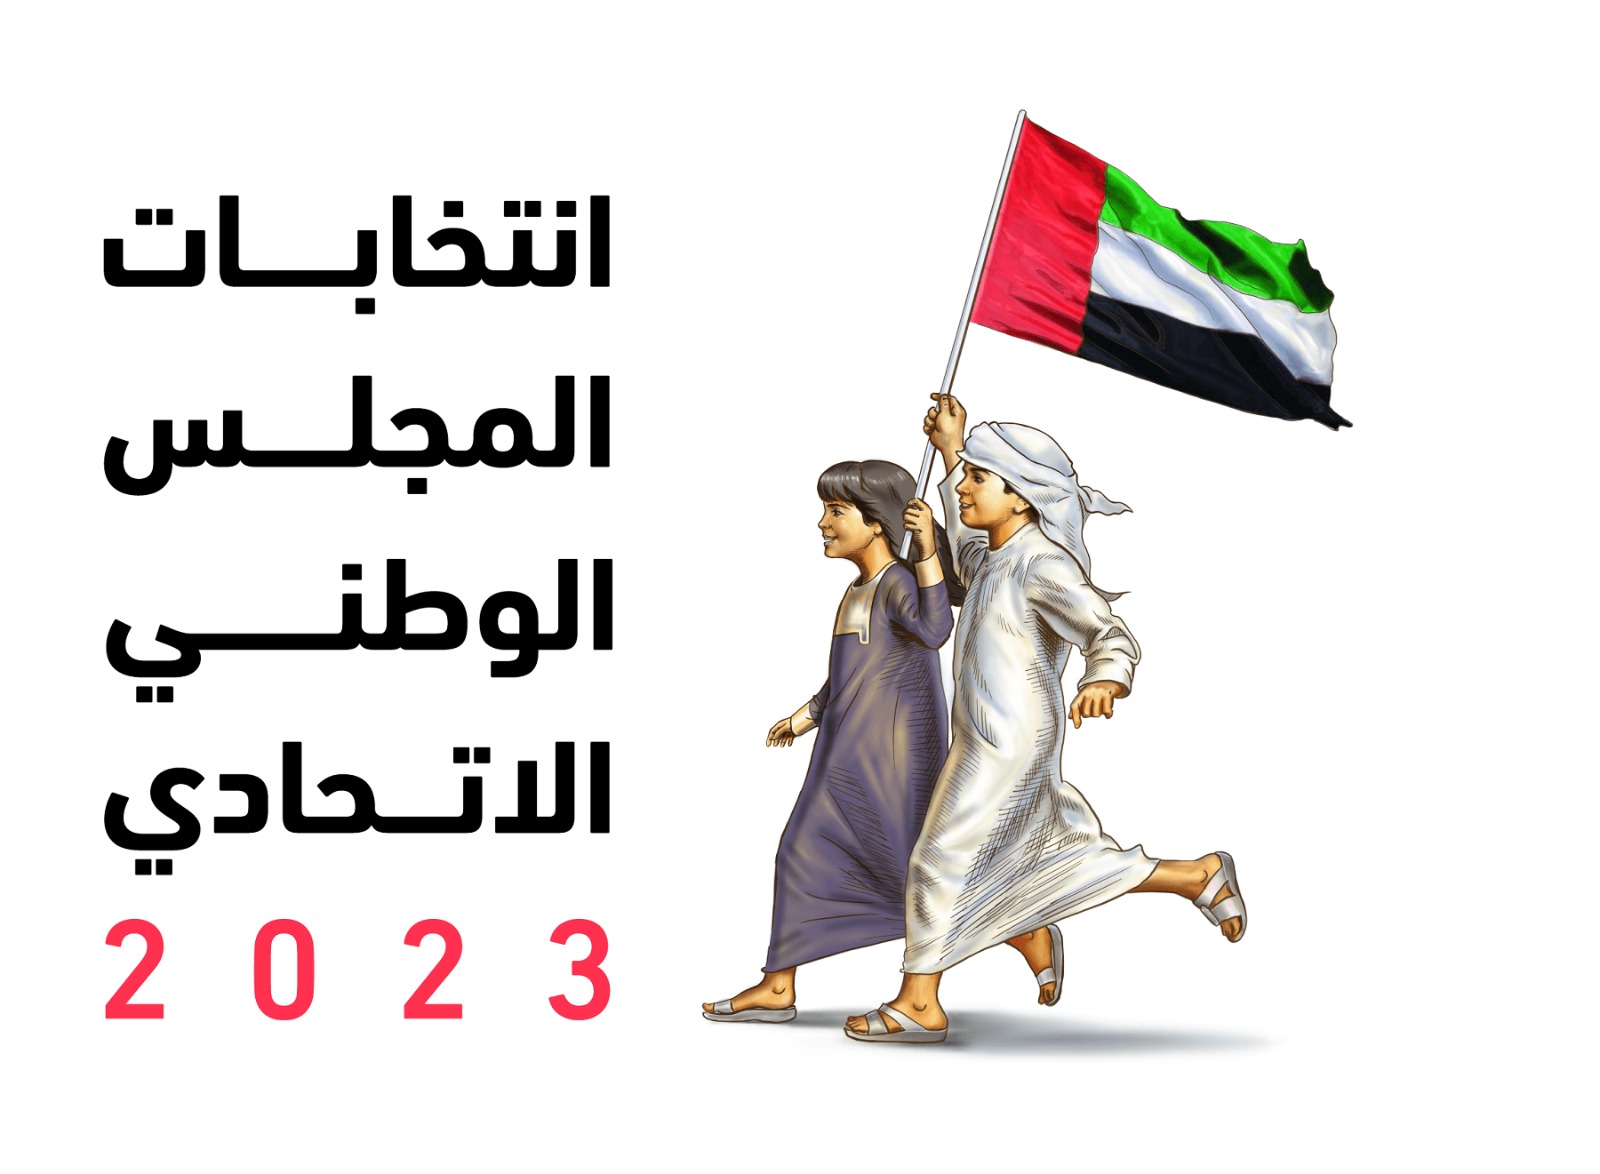 مسيرة التمكين مستمرة.. الإمارات تستعد لخامس انتخابات للمجلس الوطني الاتحادي